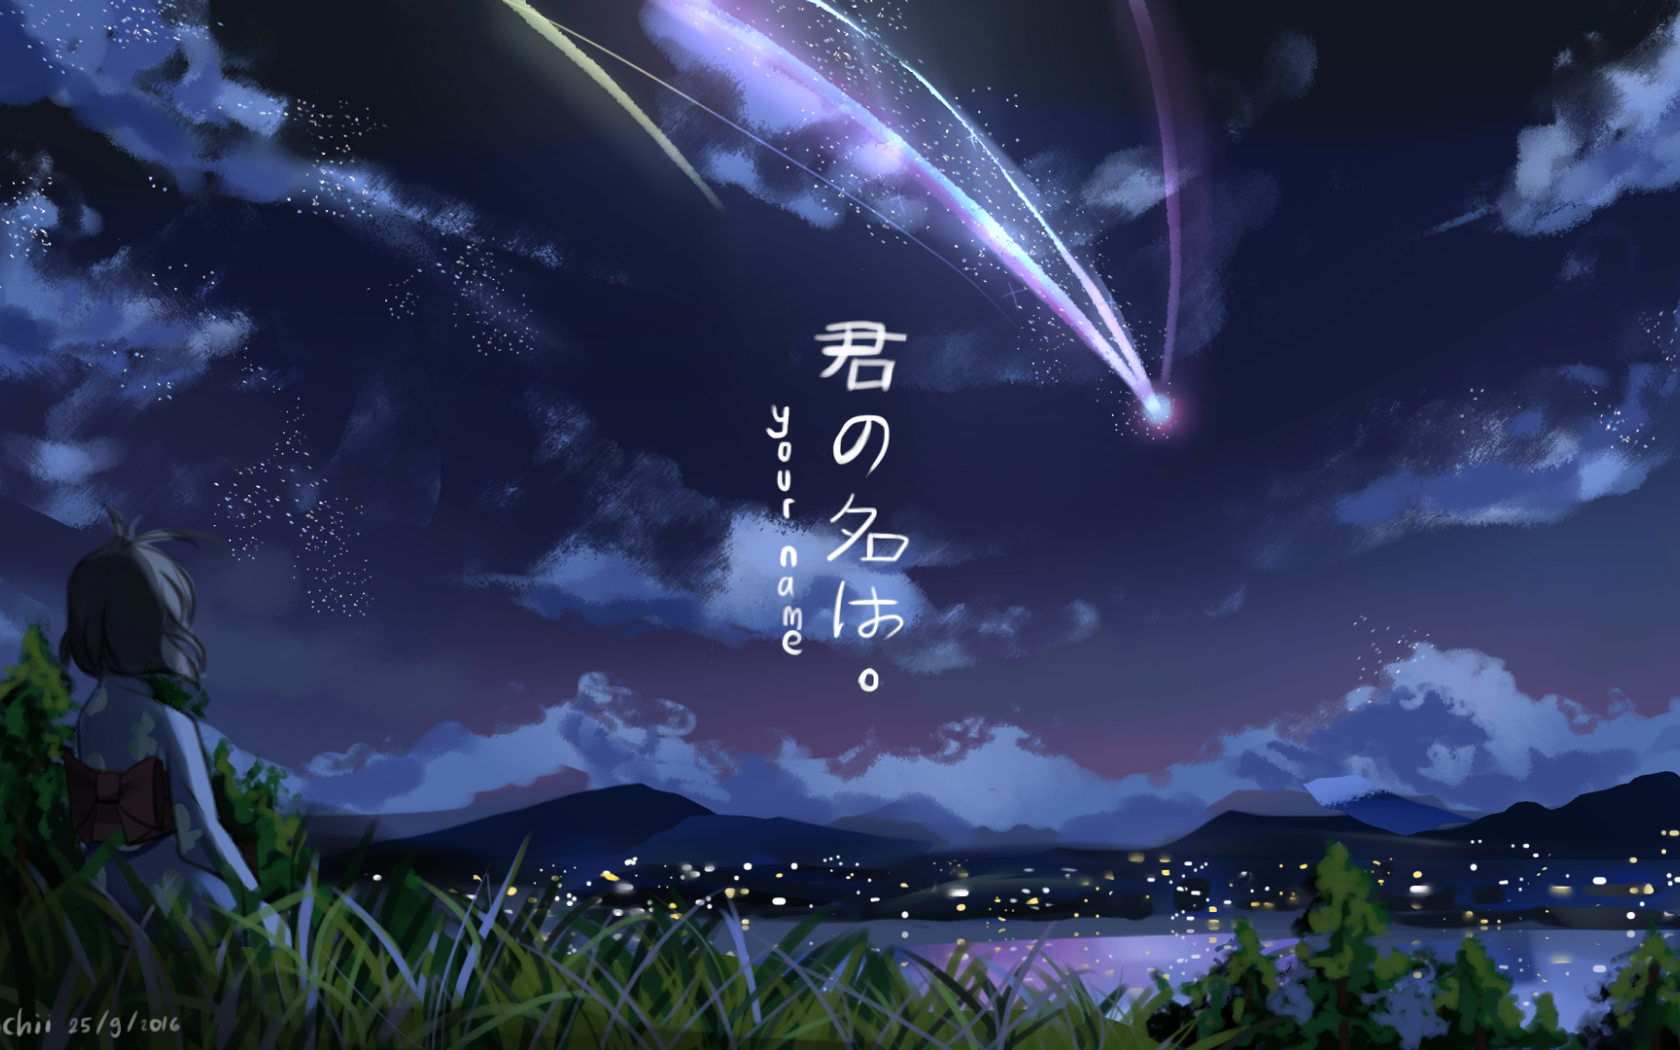 Free download Makoto Shinkai Kimi No Na Wa Wallpaper Full HD